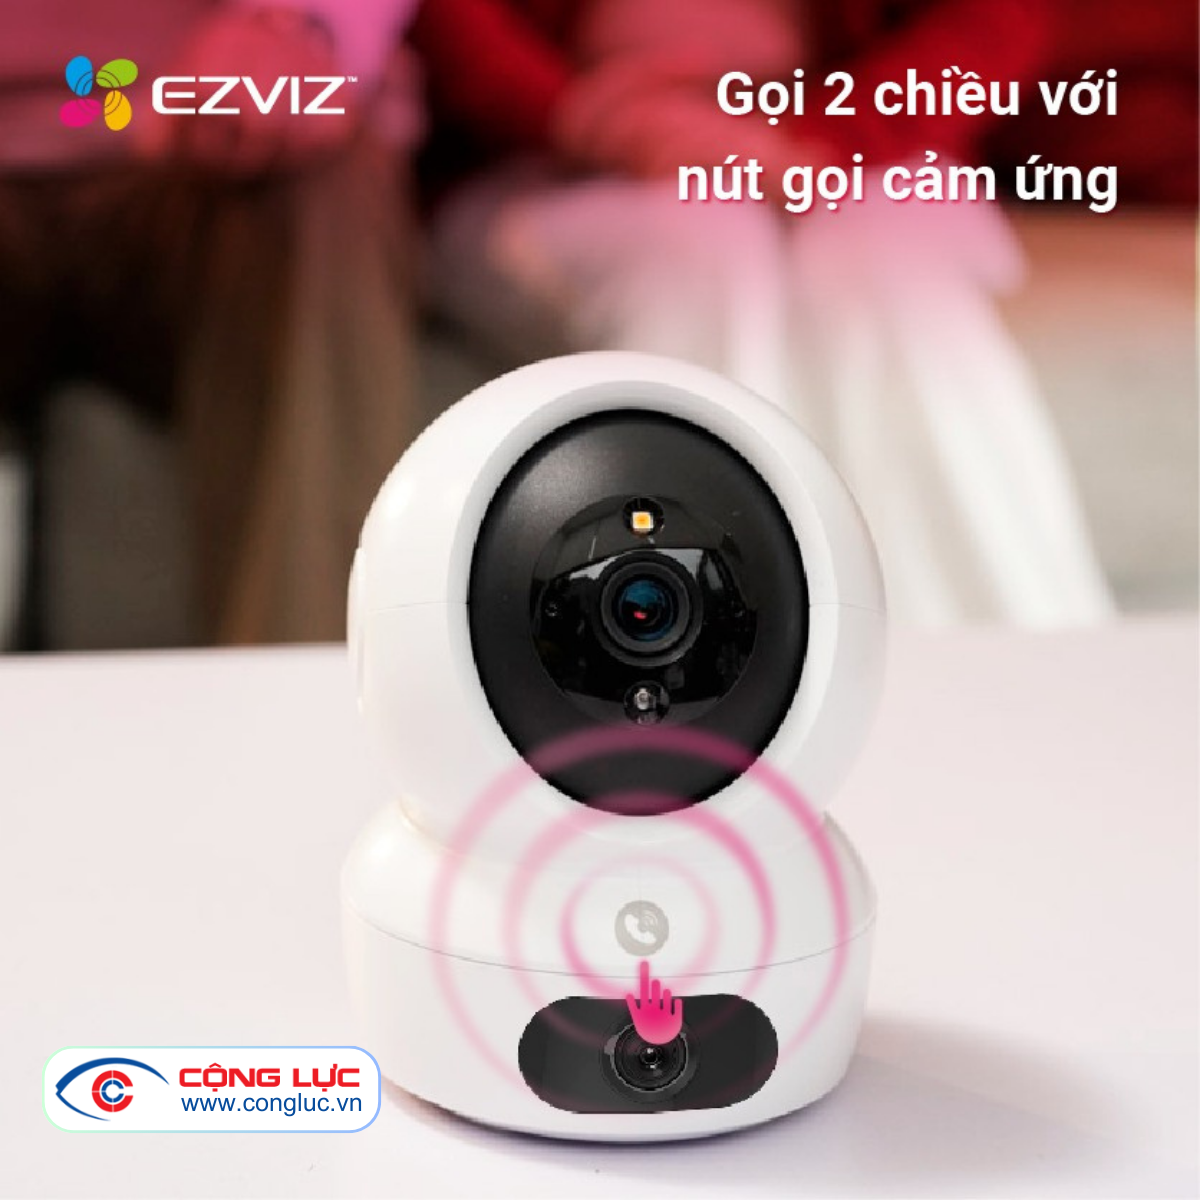 camera ống kính kép Ezviz H7C 8mp chính hãng giá rẻ nhất